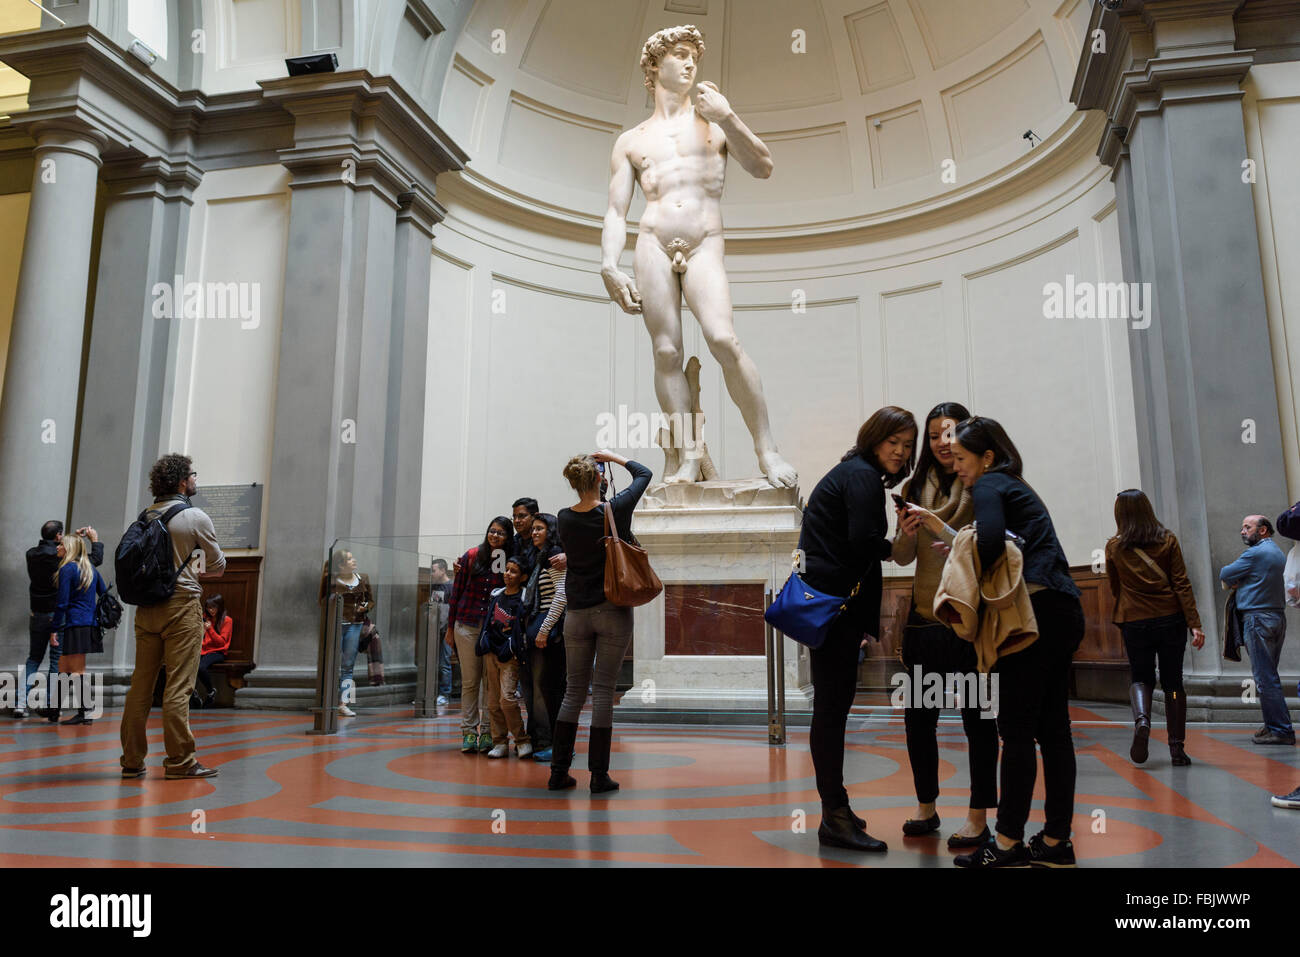 Florenz. Italien. Touristen besuchen Michelangelos Statue des David in der Galleria dell'Accademia Museum. Galerie der Akademie von Florenz. Stockfoto